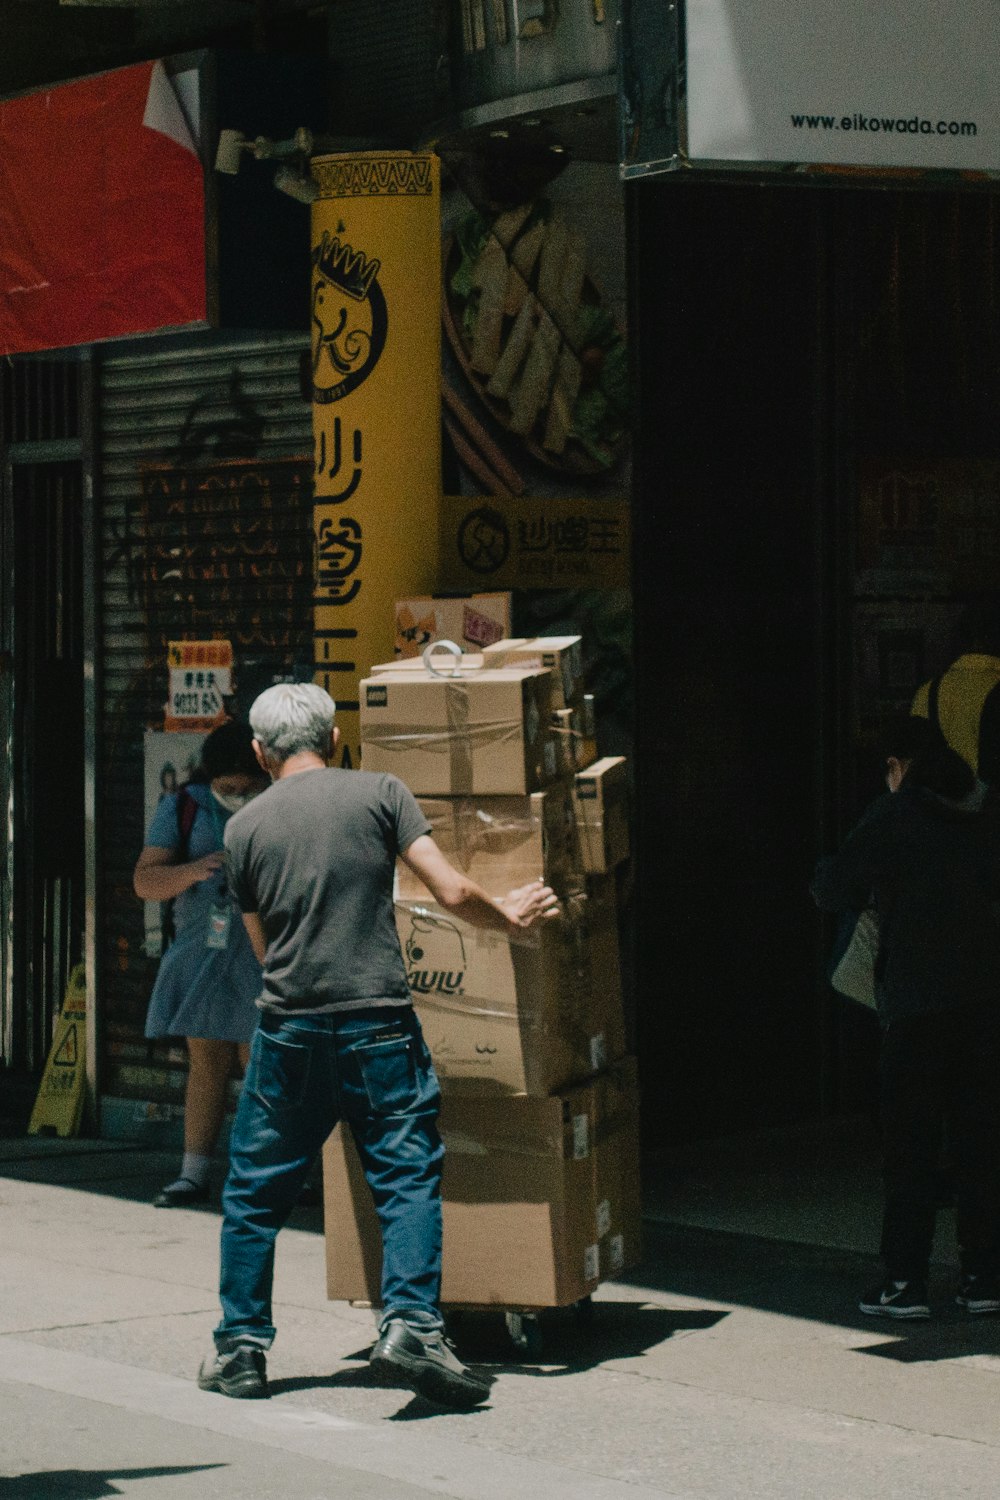 Un hombre parado junto a una pila de cajas